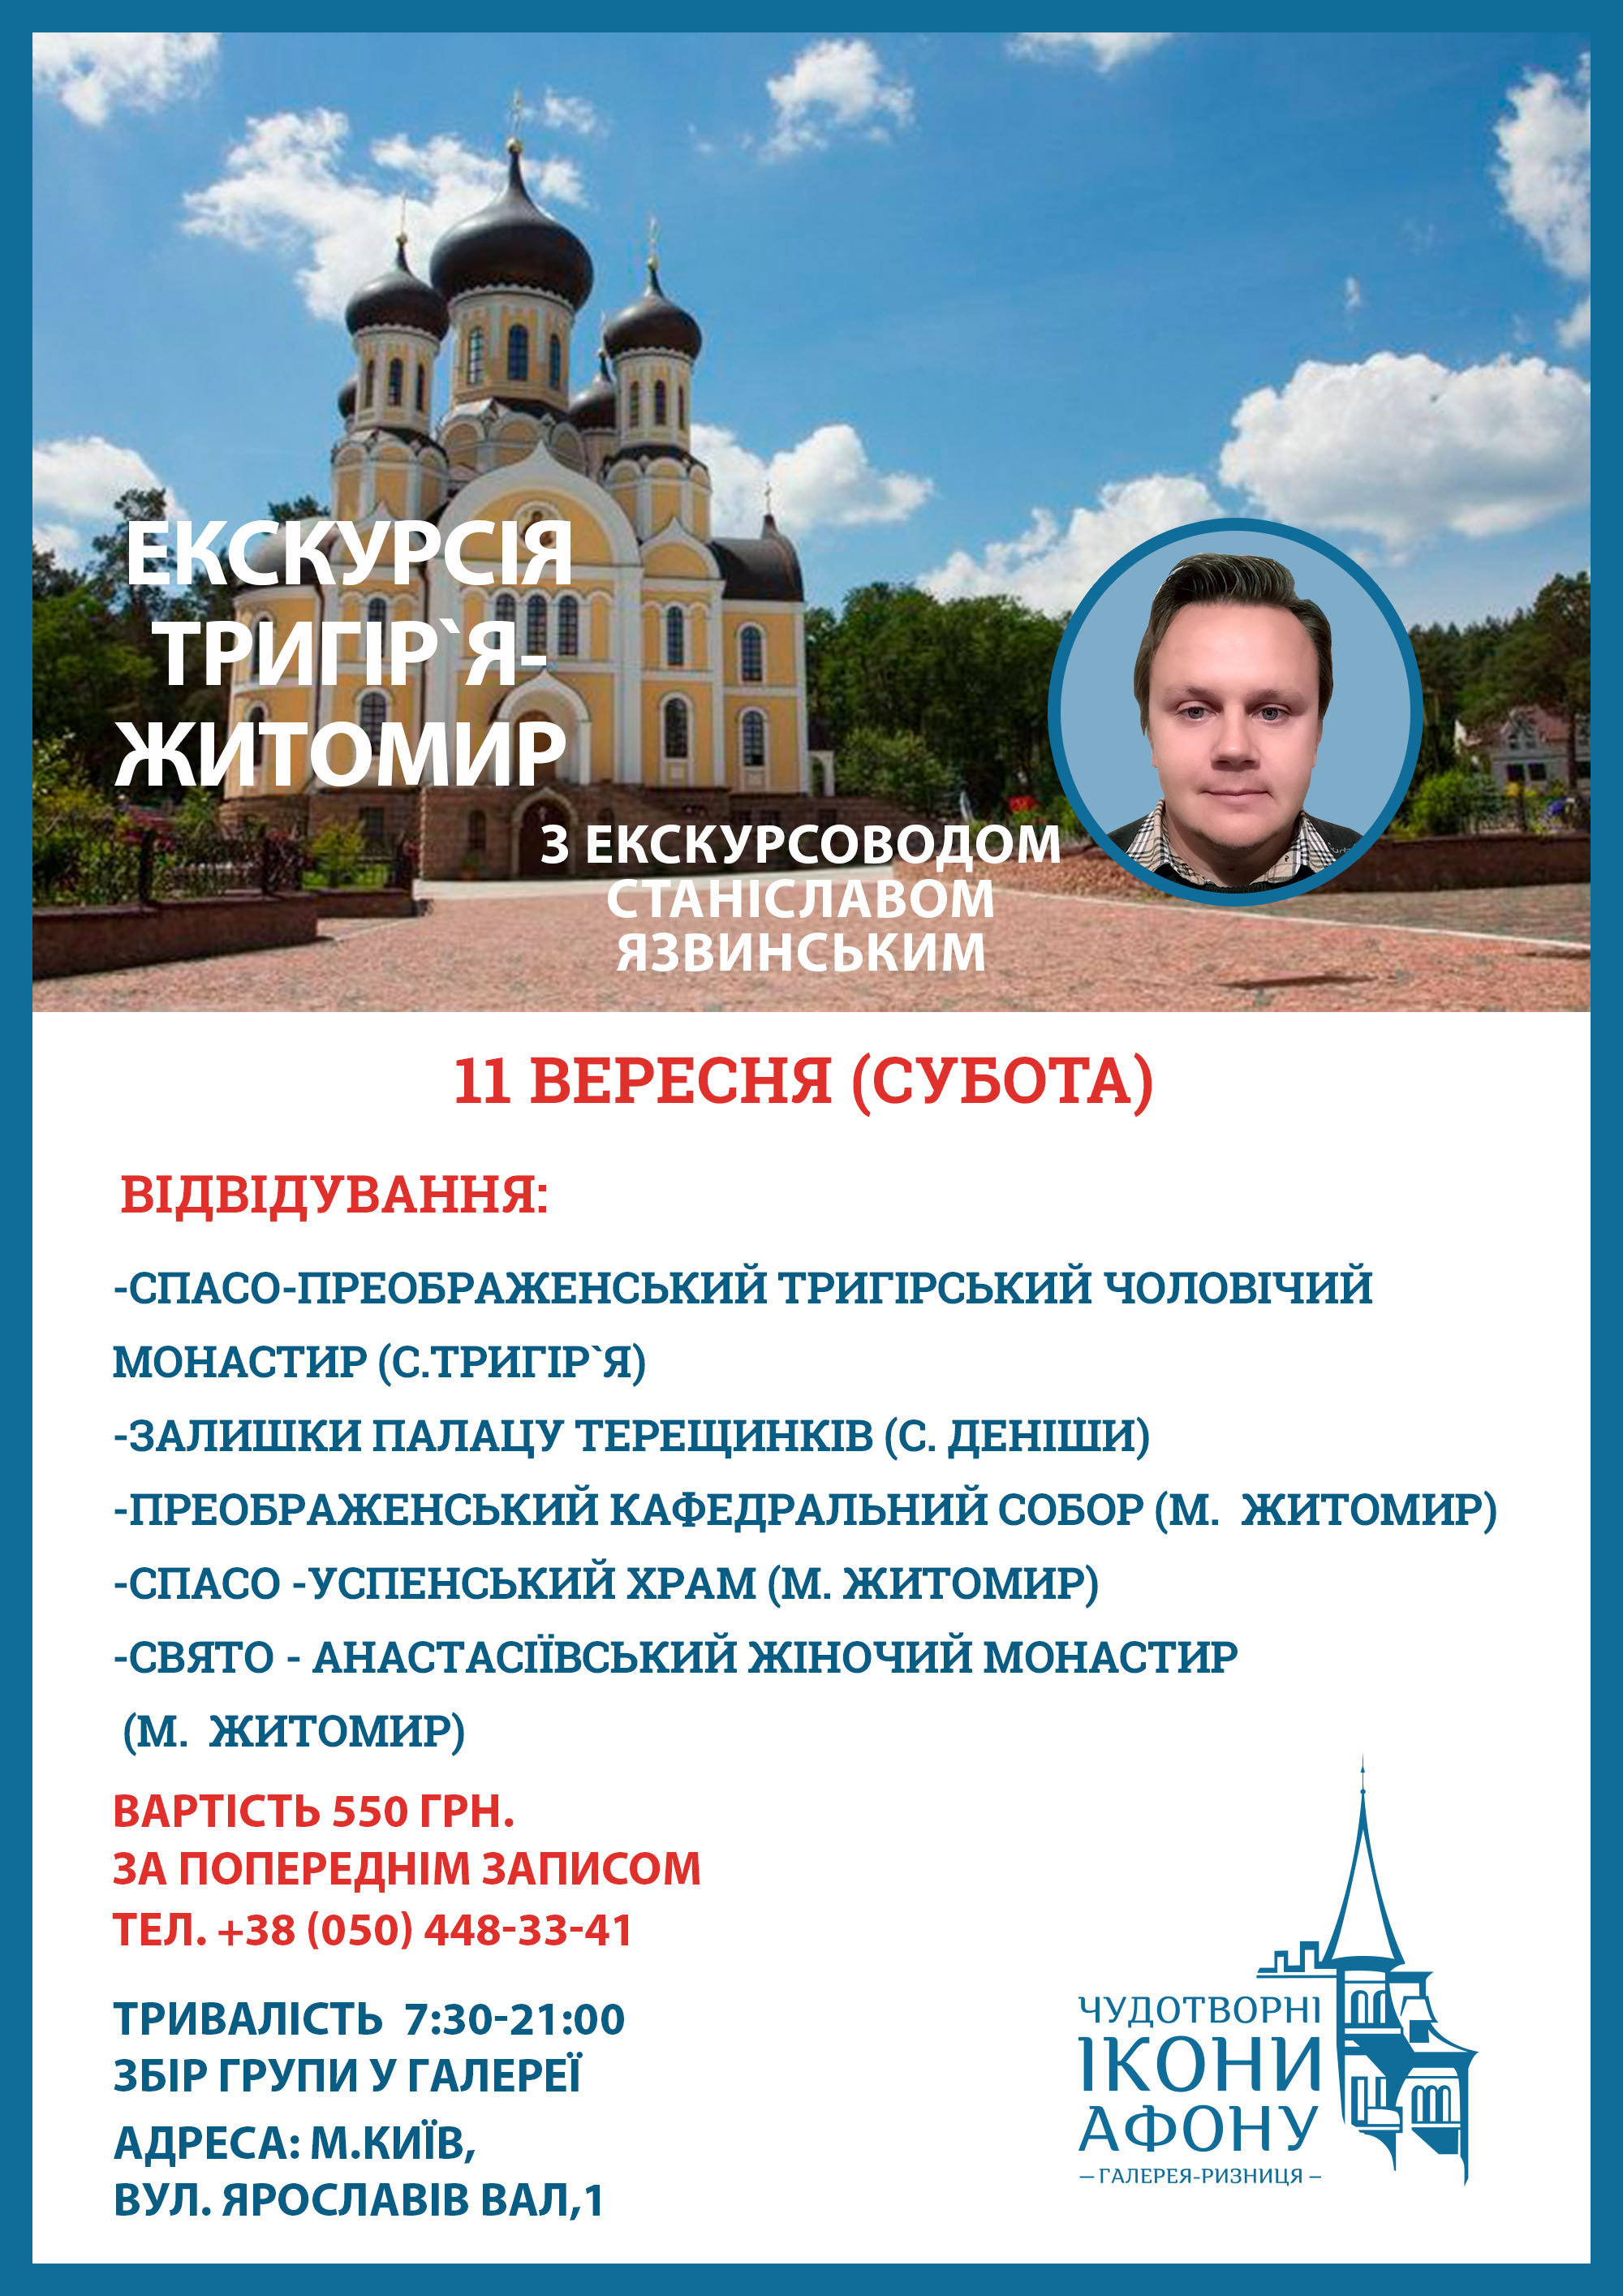 Экскурсия Киев Тригорье Житомир. Посещение монастырей и храмов